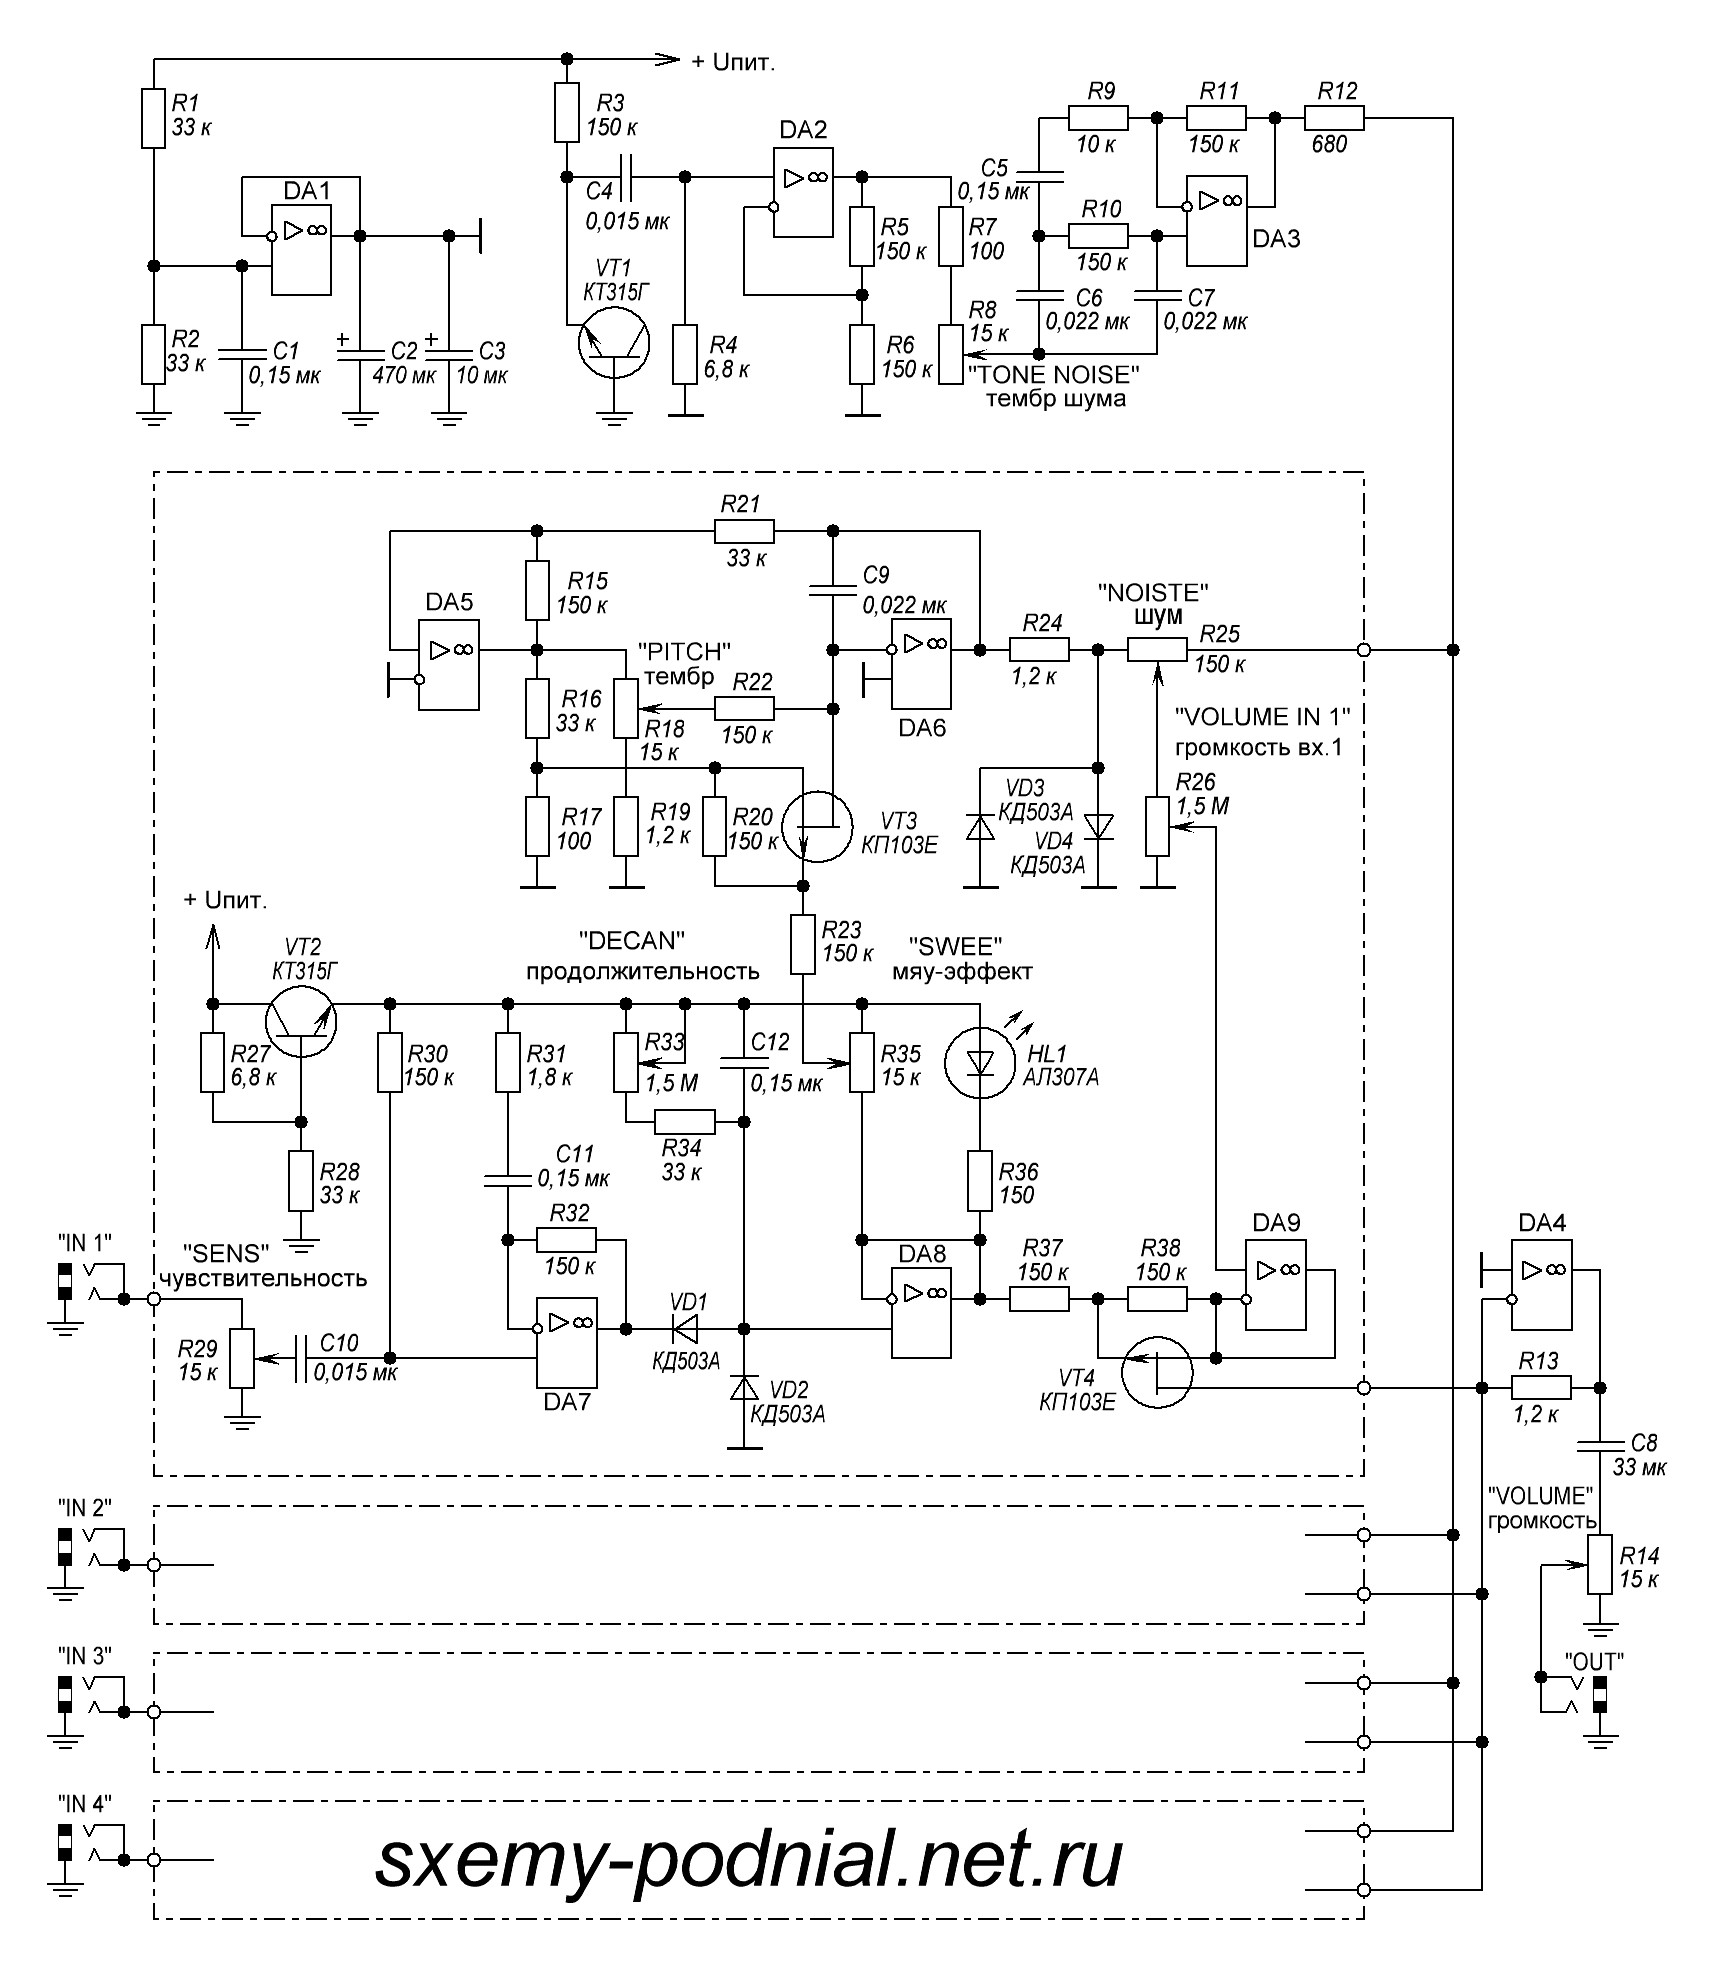 Схема барабанов электронных. 